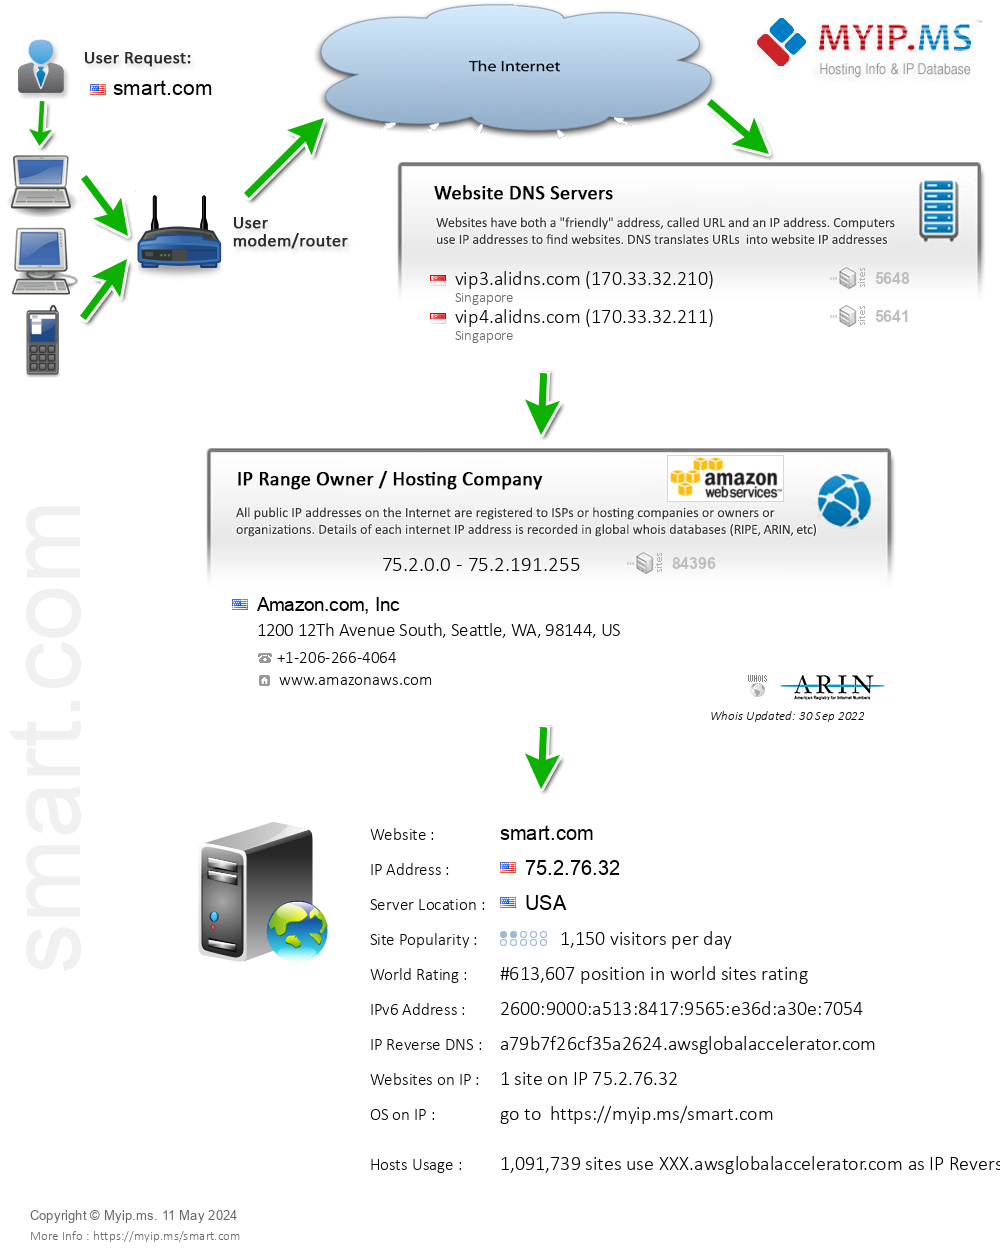 Smart.com - Website Hosting Visual IP Diagram